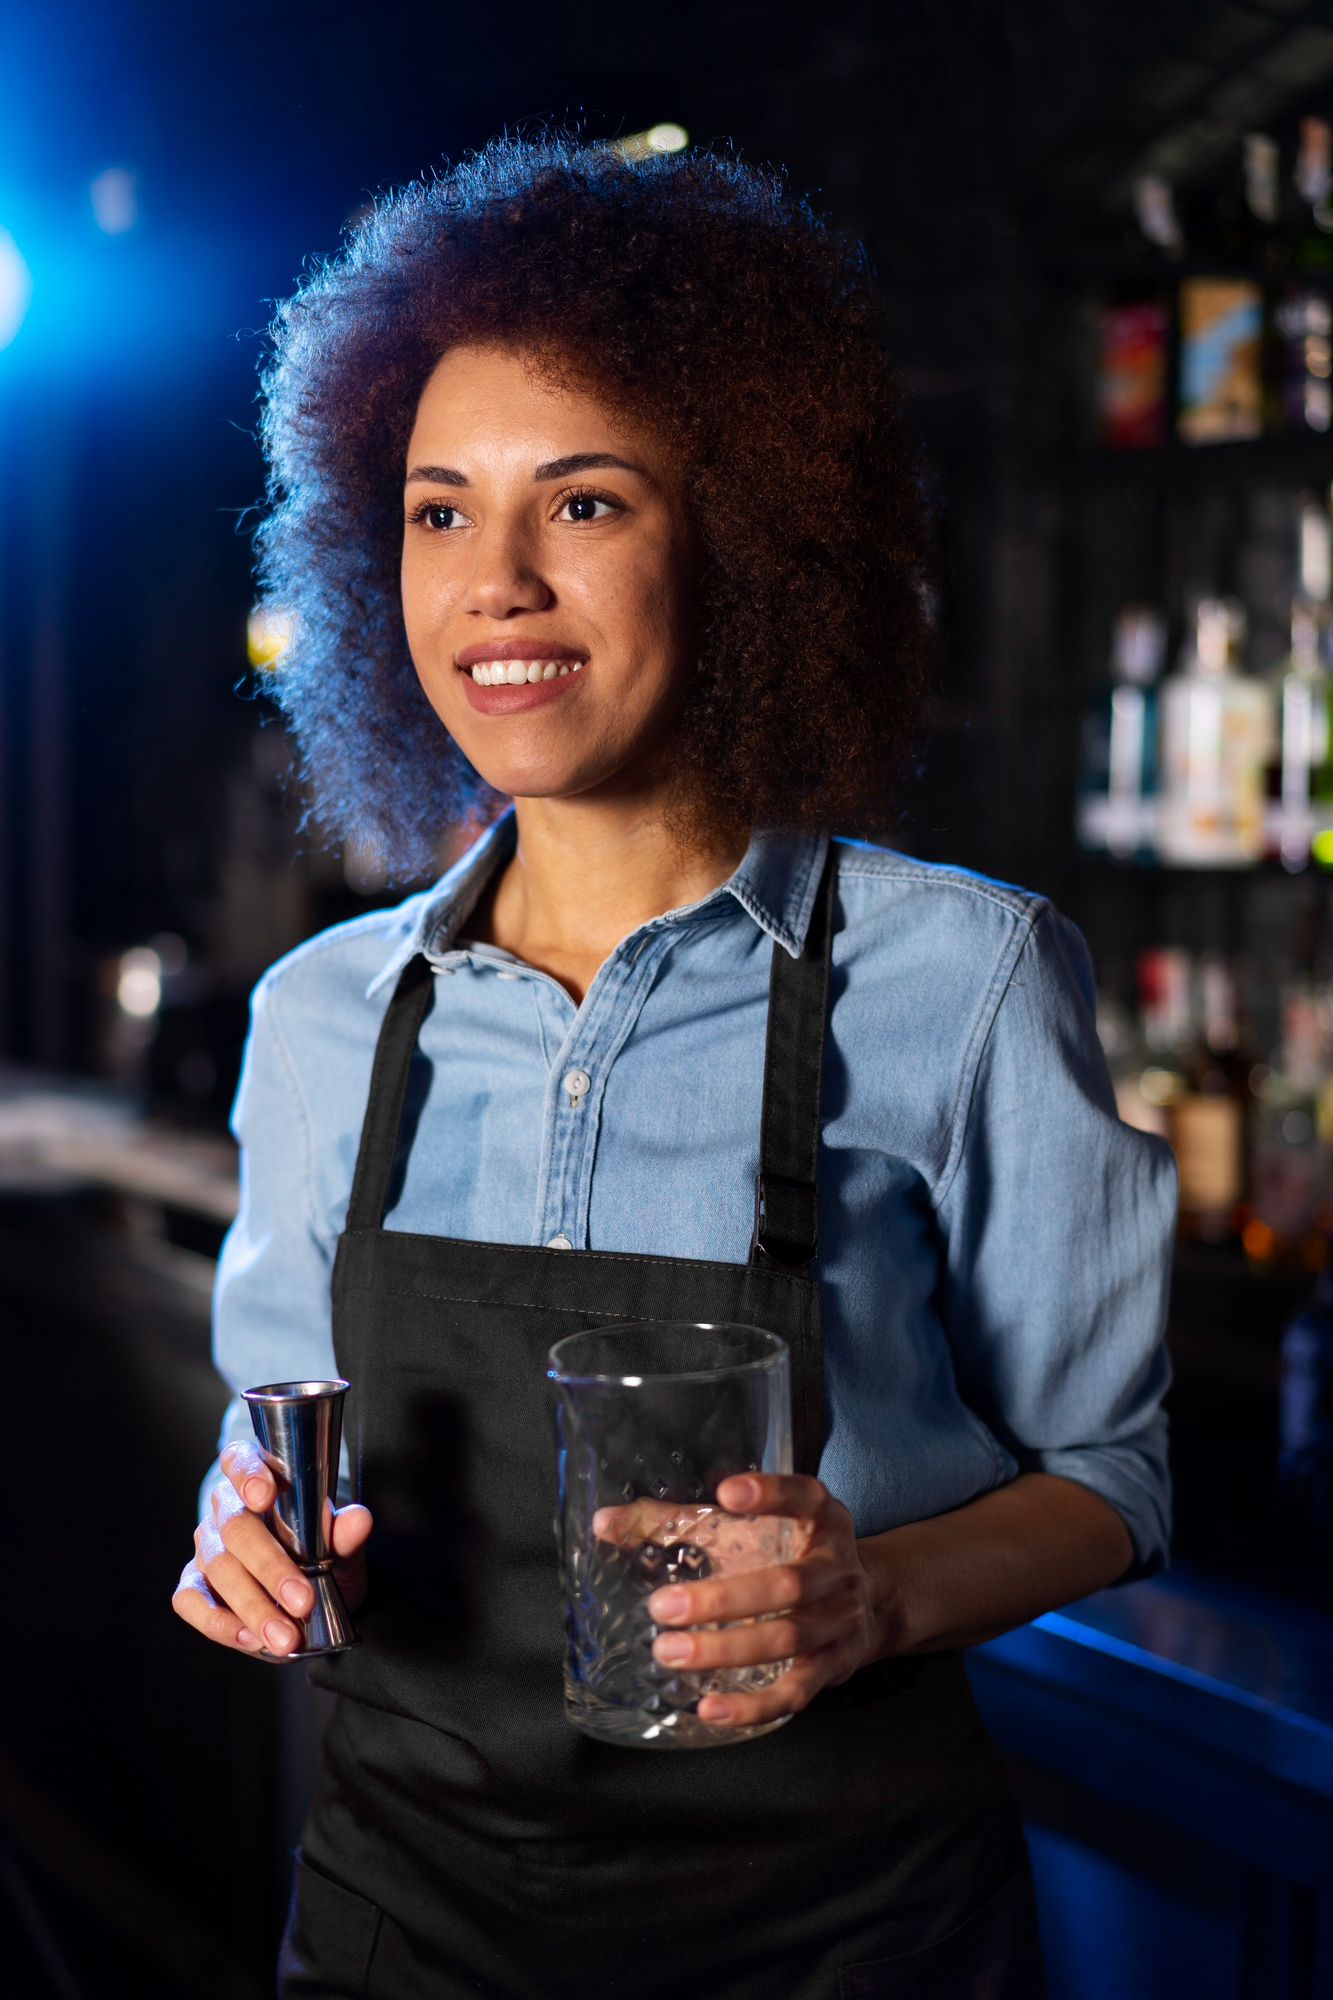 Ein glücklicher Kellner hält ein Glas und einen Ausgießer für ein Getränk | Quelle: Freepik